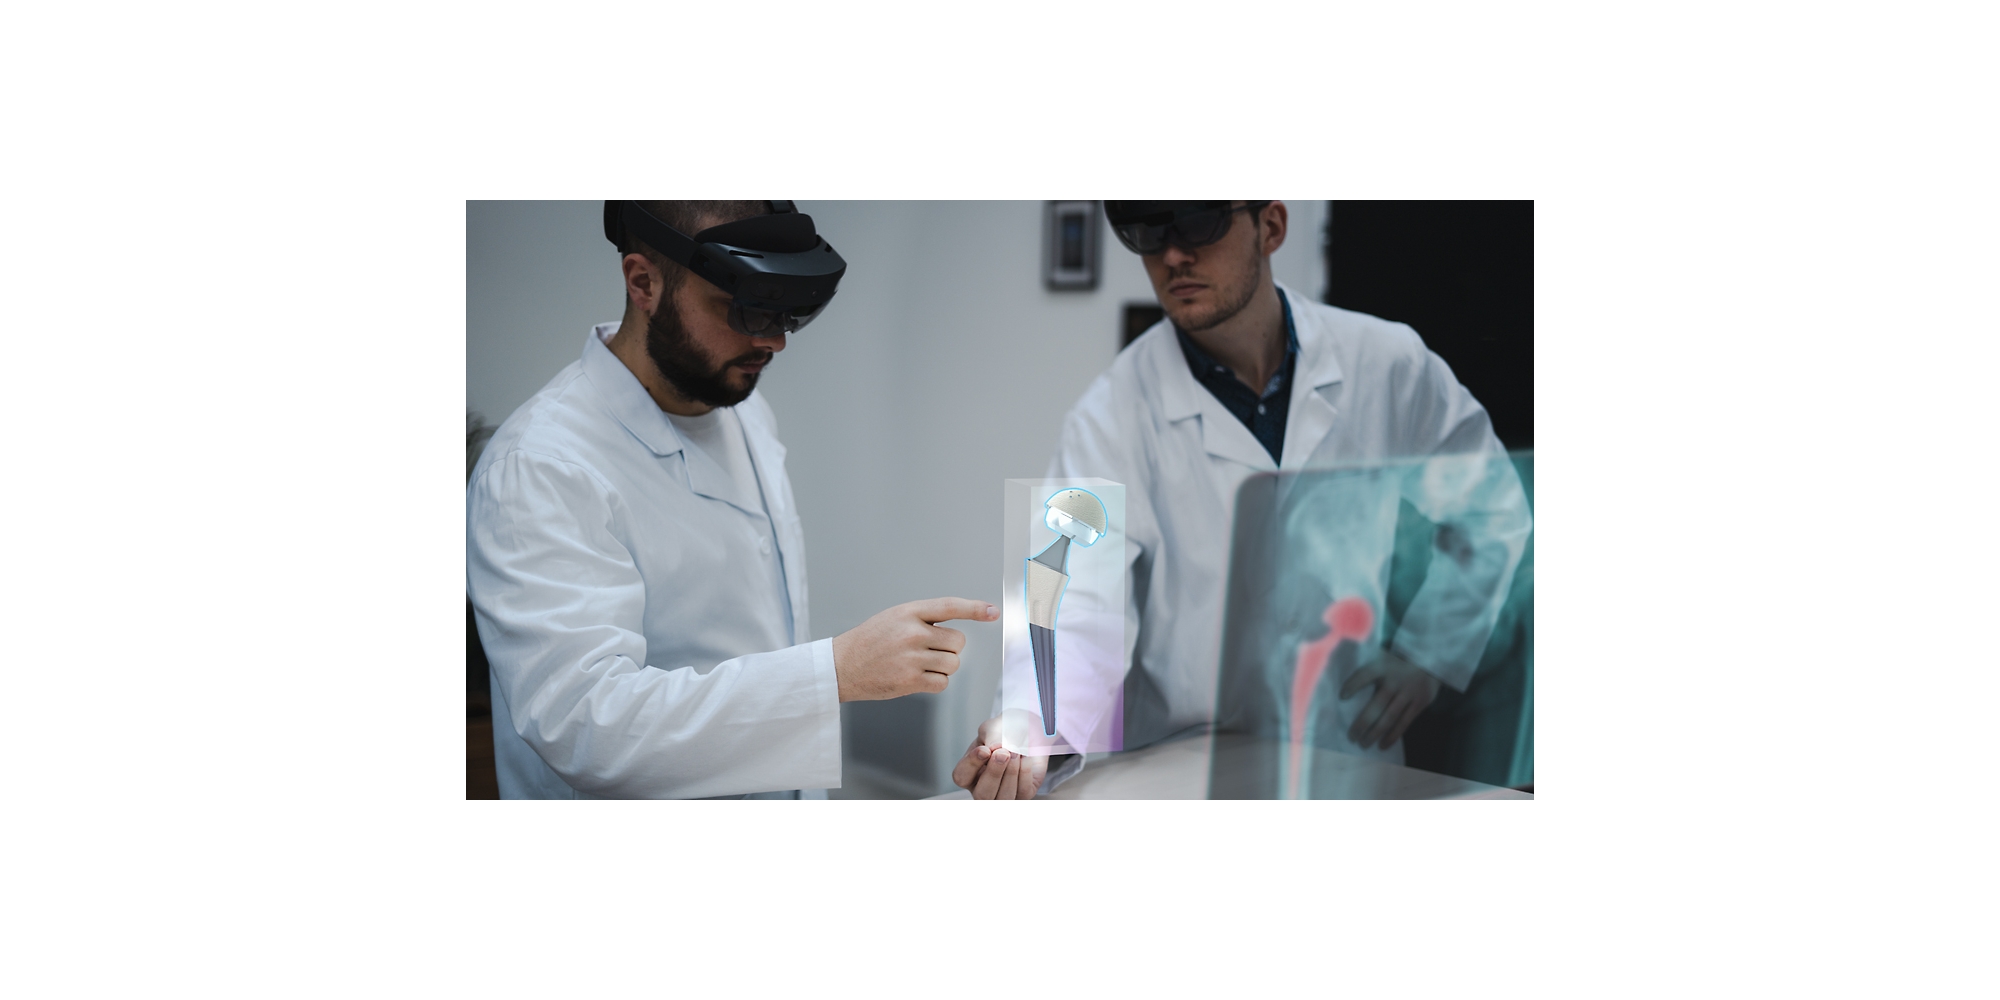 Twee zorgprofessionals die HoloLens 2-apparaten gebruiken om een röntgenfoto in mixed reality te bekijken.